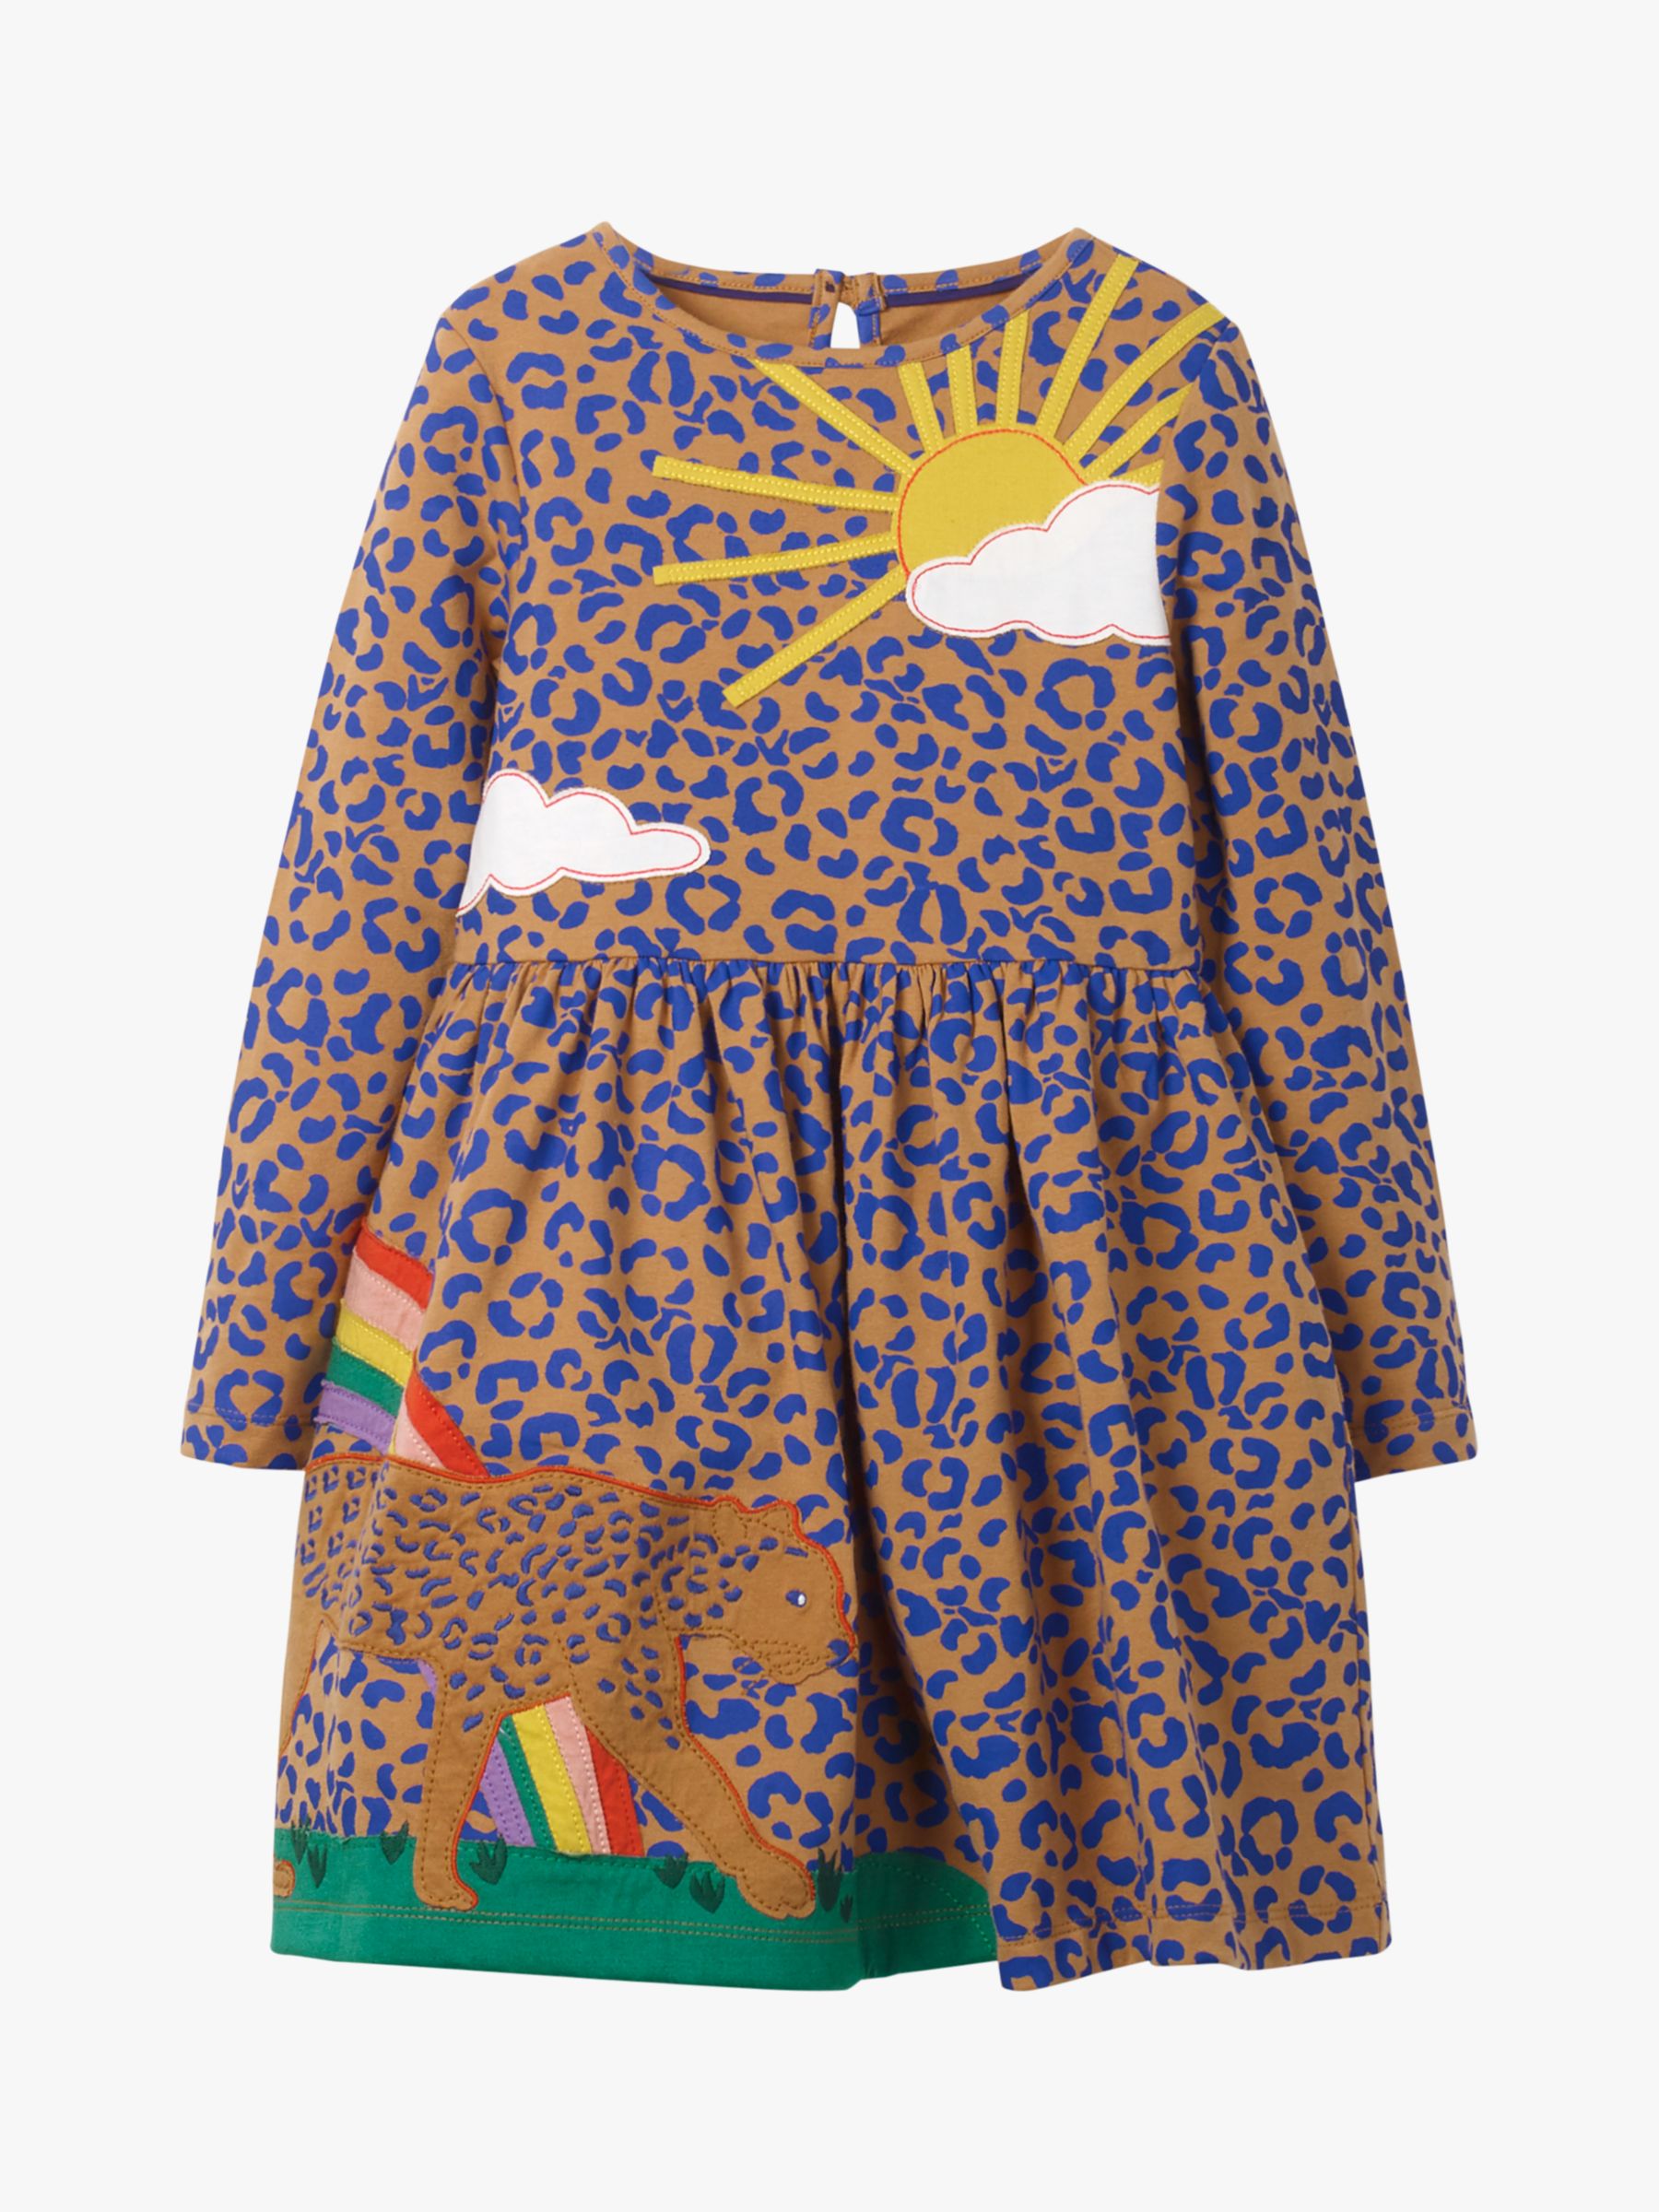 boden leopard print dress